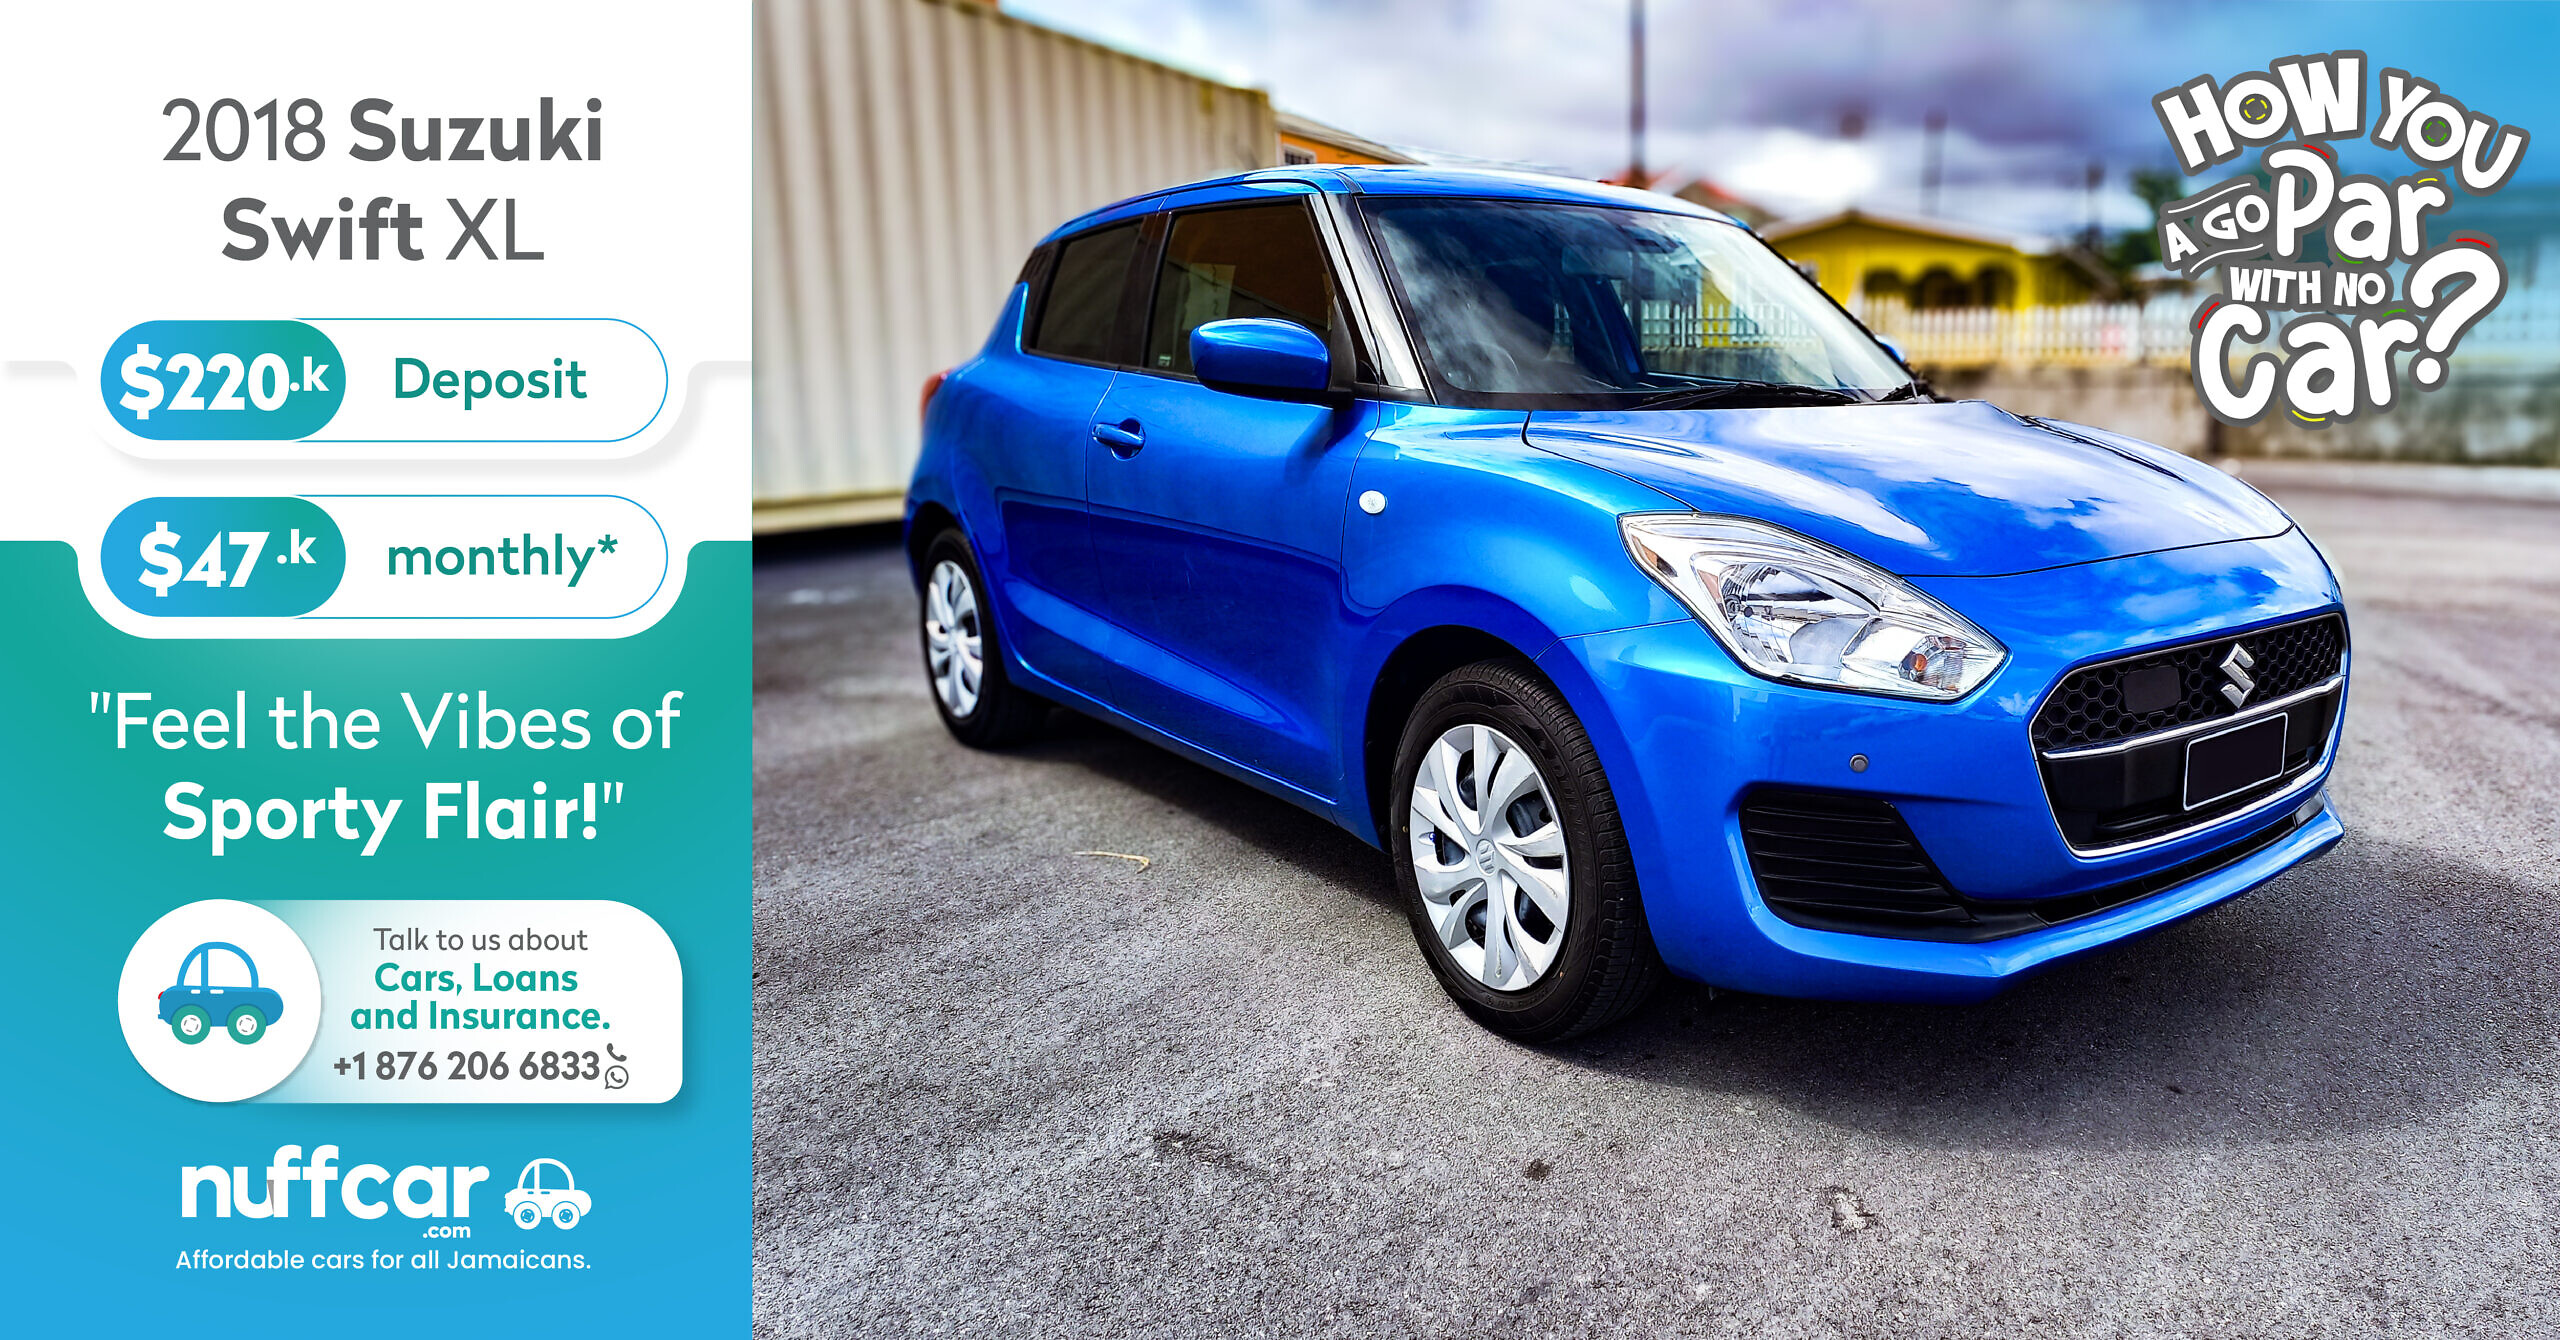 2018 Suzuki Swift XL – Get a Fast n Easy Low Deposit Car Loan